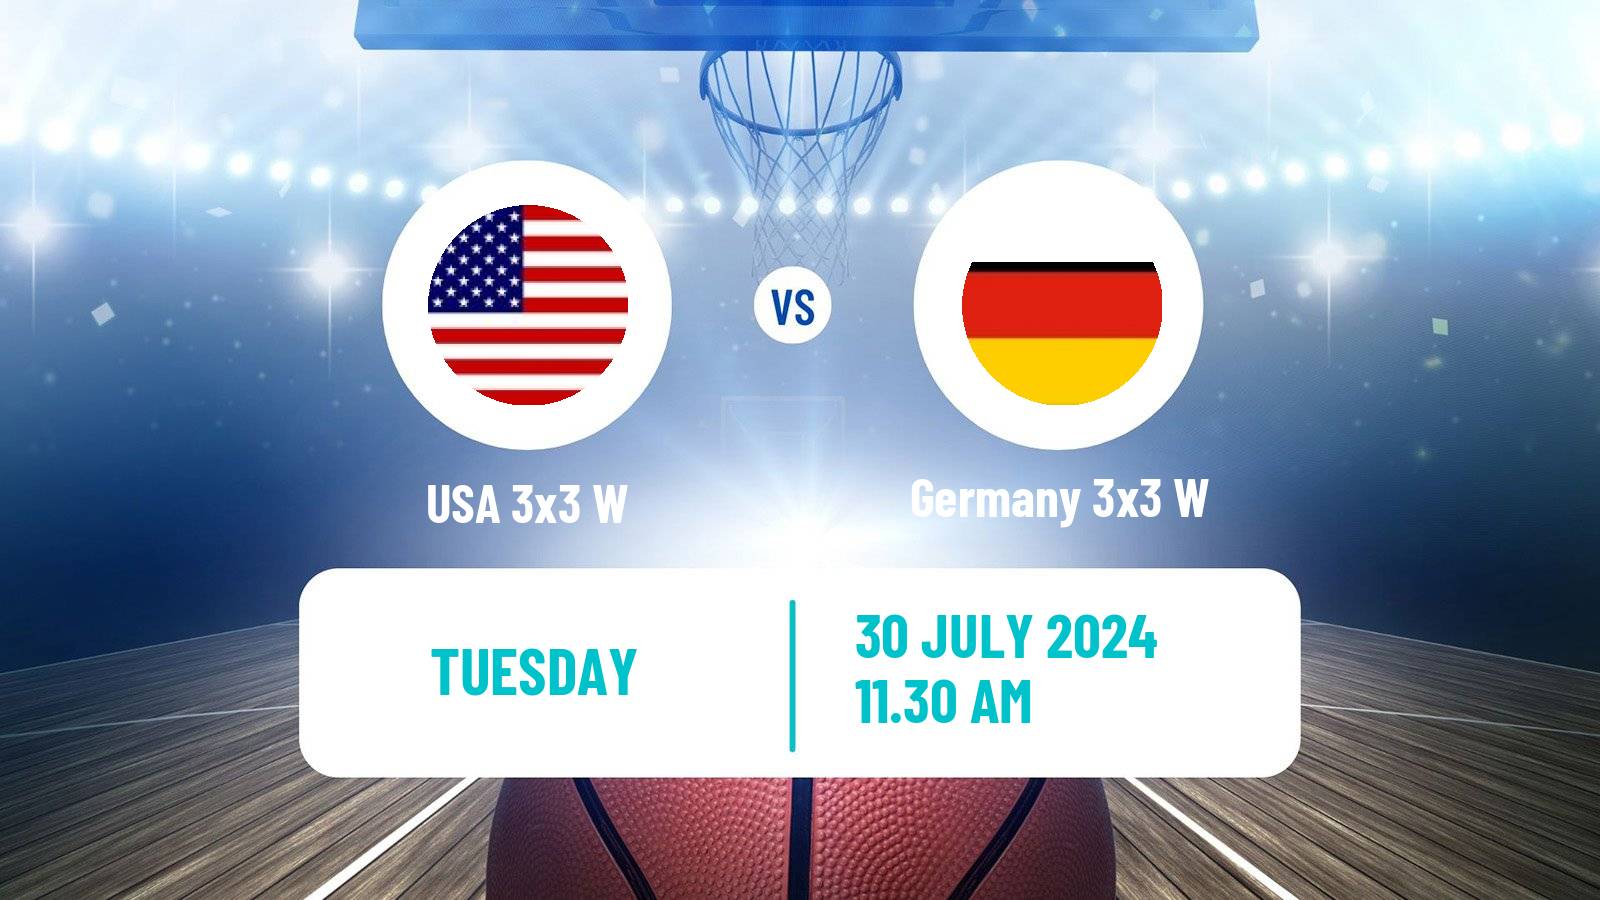 Basketball Olympic Games Basketball 3x3 Women USA 3x3 W - Germany 3x3 W